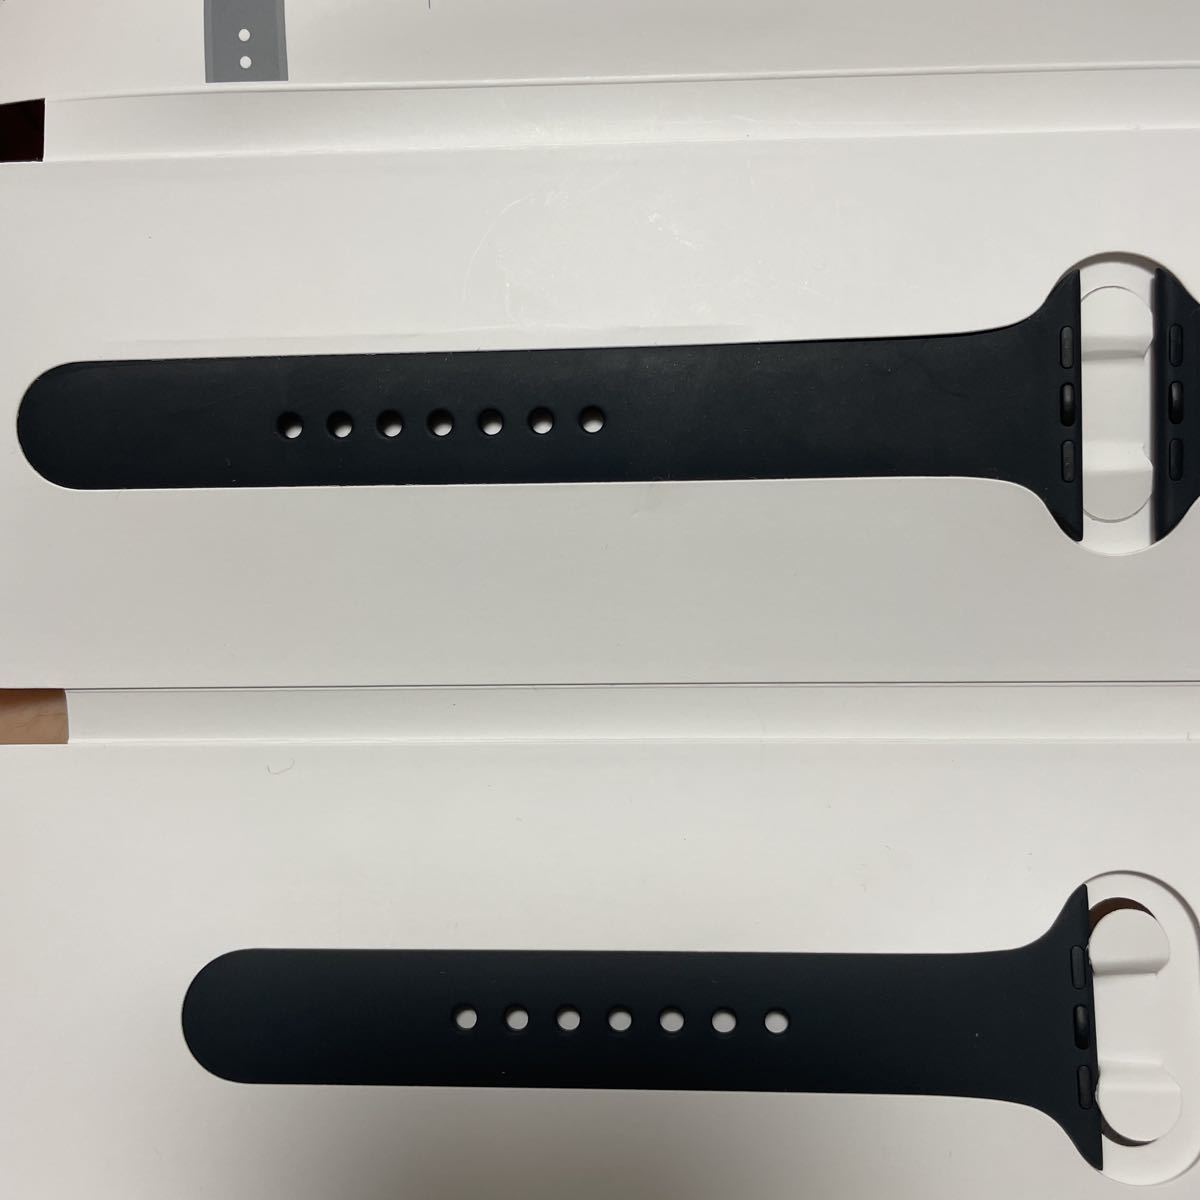 Apple Watch SE アップルウォッチ SE GPSモデル 44mm スペースグレイ アルミニウムケース ブラックスポーツバンド 美品 